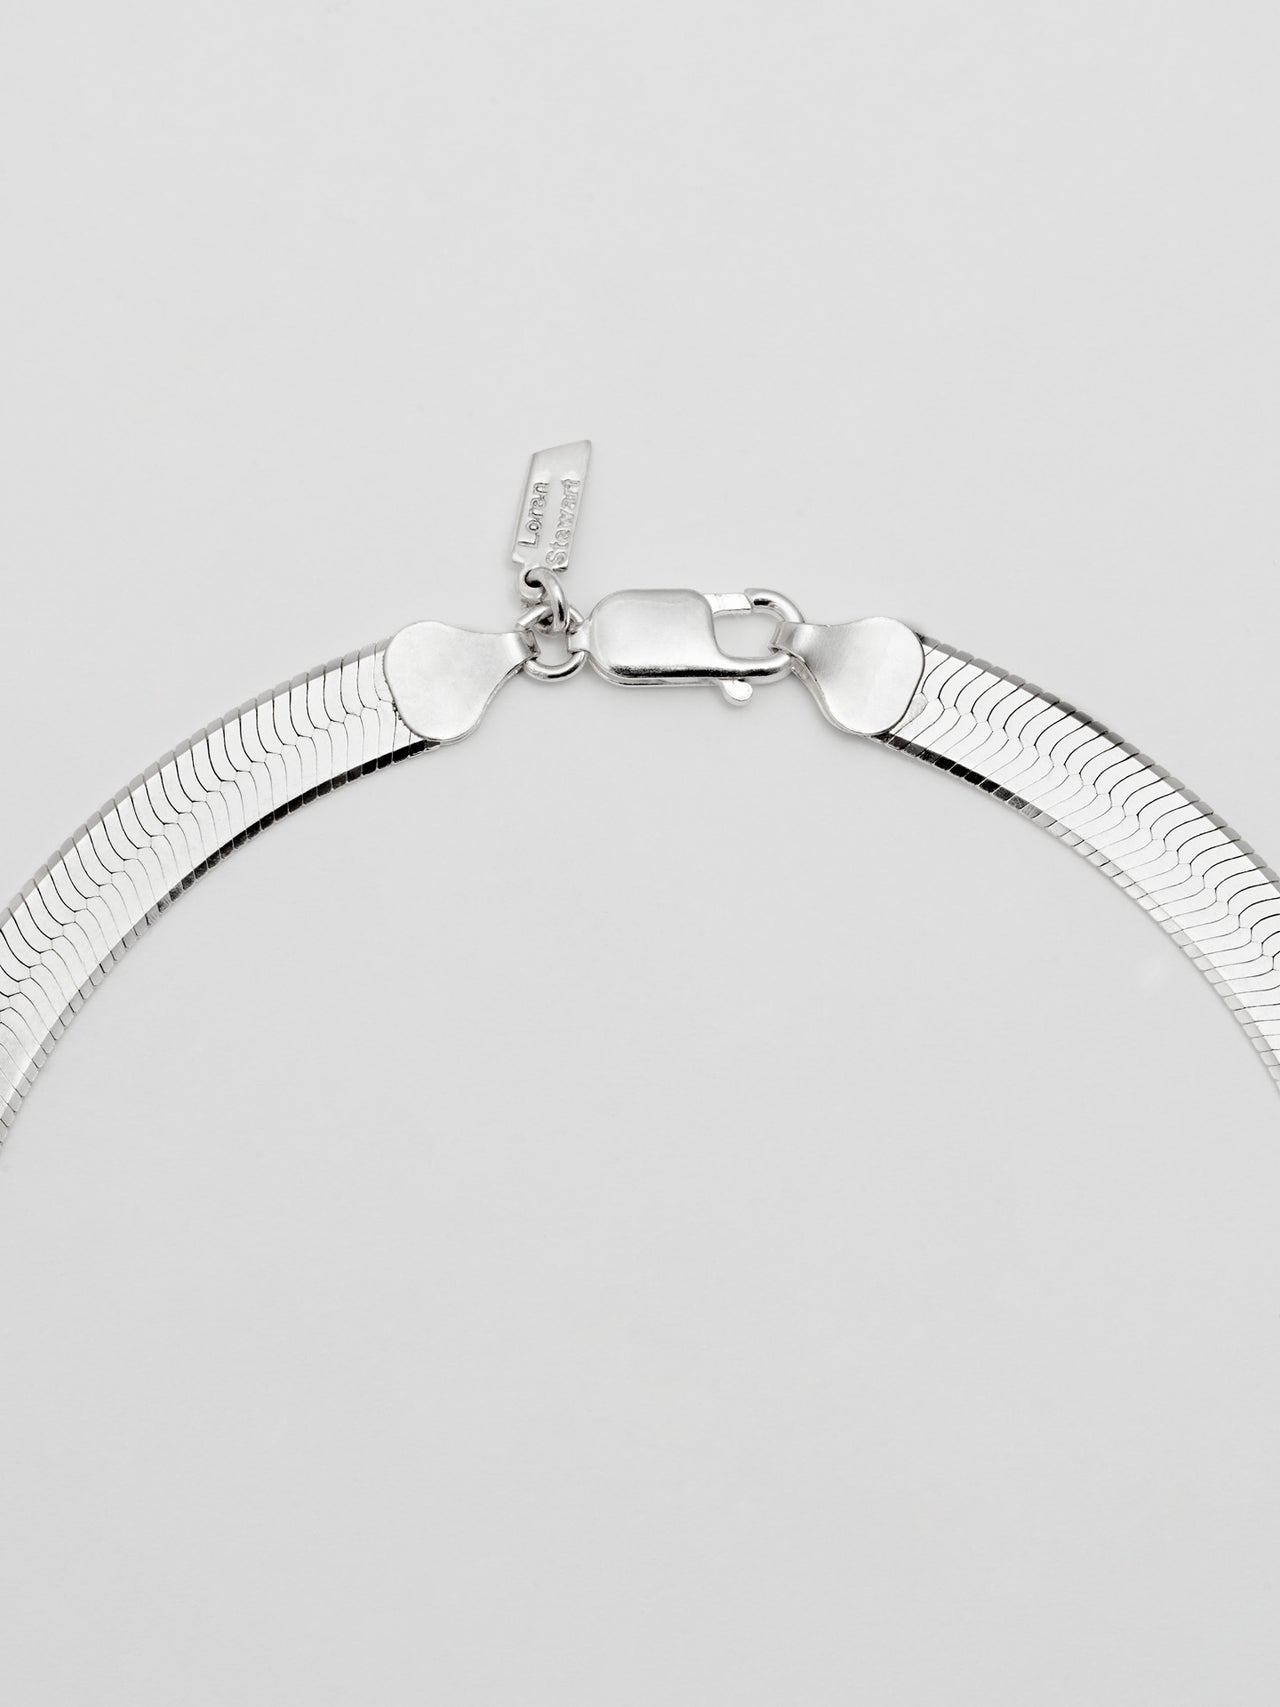 XL Herringbone Necklace in Sterling Silver by Loren Stewart